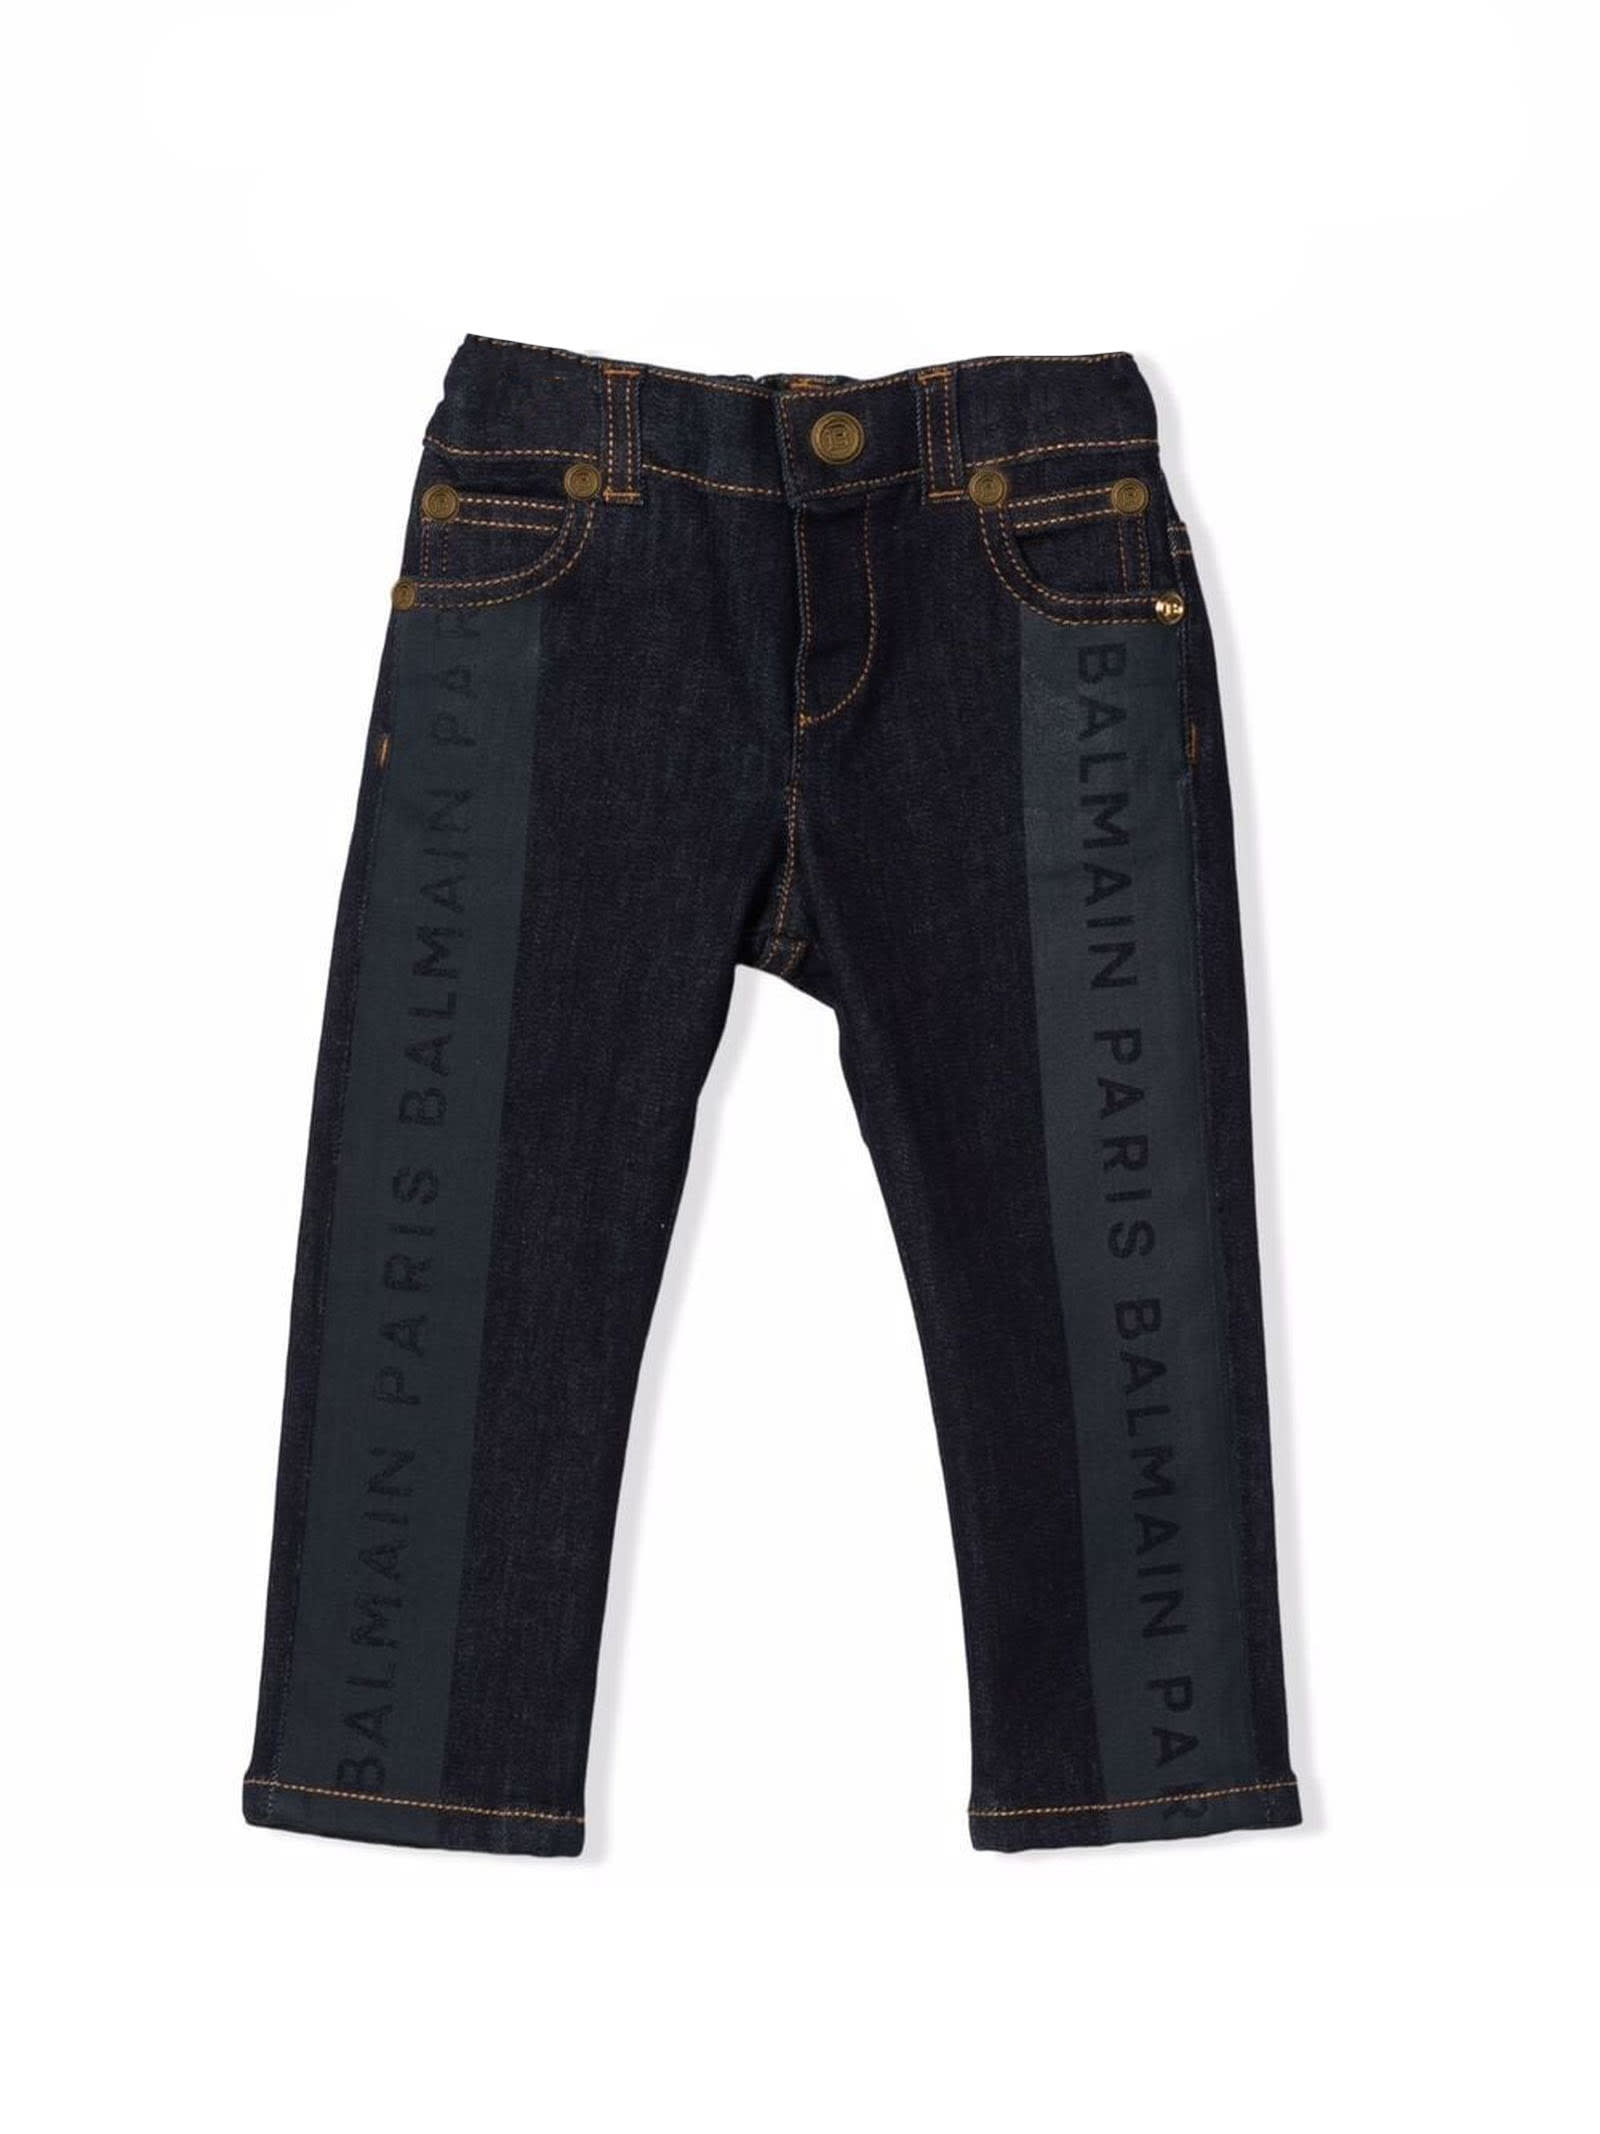 Balmain Indigo Blue Cotton Jeans